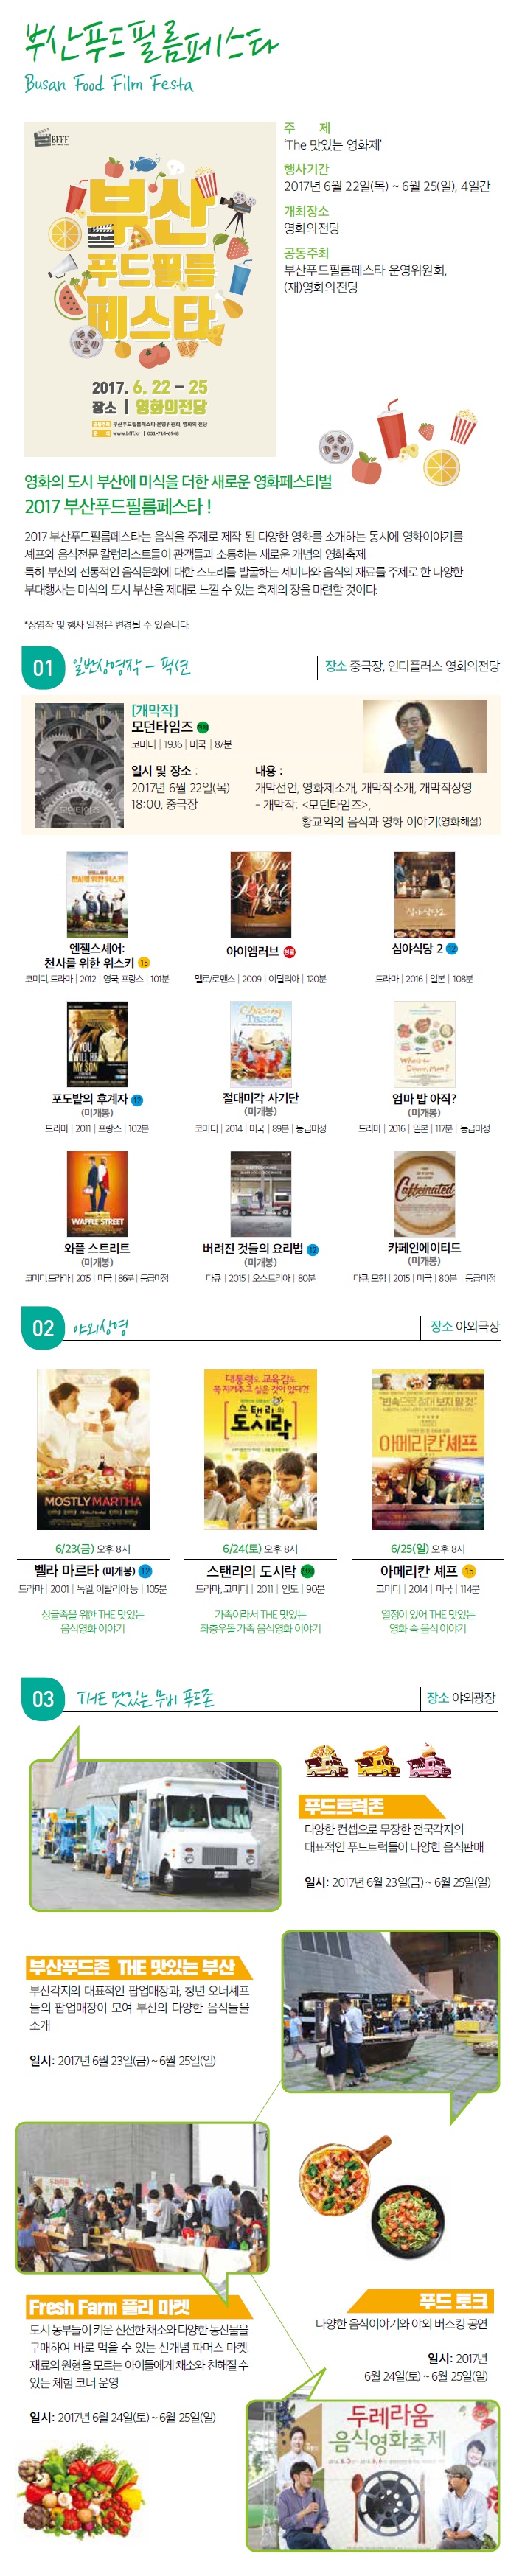 부산푸드필름페스타 Busan Food Film Festa 주제:The 맛있는 영화제 행사기간:2017년 6월22일(목)~6월25일(일),4일간 개최장소:영화의전당 공동주최:부산푸드필름페스타 운영위원회, (재)영화의전당|영화의 도시 부산에 미식을 더한 새로운 영화페스티벌 2017 부산푸드필름페스타! 2017부산푸드필름페스타는 음식을 주제로 제작 된 다양한 영화를 소개하는 동시에 영화이야기를 셰프와 음식전문 칼럼니스트들이 관객들과 소통하는 새로운 개념의 영화축제. 특히 부산의 전통적인 음식문화에 대한 스토리를 발굴하는 세미나와 음식의 재료를 주제로 한 다양한 부대행사는 미식의 도시 부산을 제대로 느낄 수 있는 축제의 장을 마련할 것이다. *상영작 및 행사일정은 변경될 수 있습니다./01일반상영작-픽션 장소:중극장,인디플러스 영화의전당 [개막작]모던타임즈|엔젤스셰어:천사를 위한 위스키|아이엠러브|심야식당2|포도밭의 후계자(미개봉)|절대미각 사기단(미개봉)|엄마 밥 아직?(미개봉)|와플 스트리트(미개봉)|버려진 것들의 요리법(미개봉)|카페인에이티드(미개봉)/02 야외상영 장소:야외극장 6/23(금)벨라마르타(미개봉)|6/24(토)스탠리의 도시락|6/25(일)아메리칸 셰프/03 THE 맛있는 무비 푸드존 장소:야외광장 |푸드 트럭존:다양한 컨셉으로 무장한 전국 각지의 대표적인 푸드트럭들이 다양한 음식판매 일시:2017년 6월 23일(금)~6월25일(일)|부산푸드존 THE 맛있는 부산:부산각지의 대표적인 팝업매장과,청년 오너셰프들의 팝업매장이 모여 부산의 다양한 음식들을 소개 일시:2017년 6월23일(금)~6월25일(일)|Fresh Farm 플리마켓:도시 농부들이 키운 신선한 채소와 다양한 농산물을 구매하여 바로 먹을 수 잇는 신개념 파머스 마켓. 재료의 원형을 모르는 아이들에게 채소와 친해질 수 있는 체험 코너 운영 일시:2017년 6월 24일(토)~6월25일(일)|푸드토크:다양한 음식이야기와 야외 버스킹 공연 일시:2017년 6월24일(토)~6월25일(일)